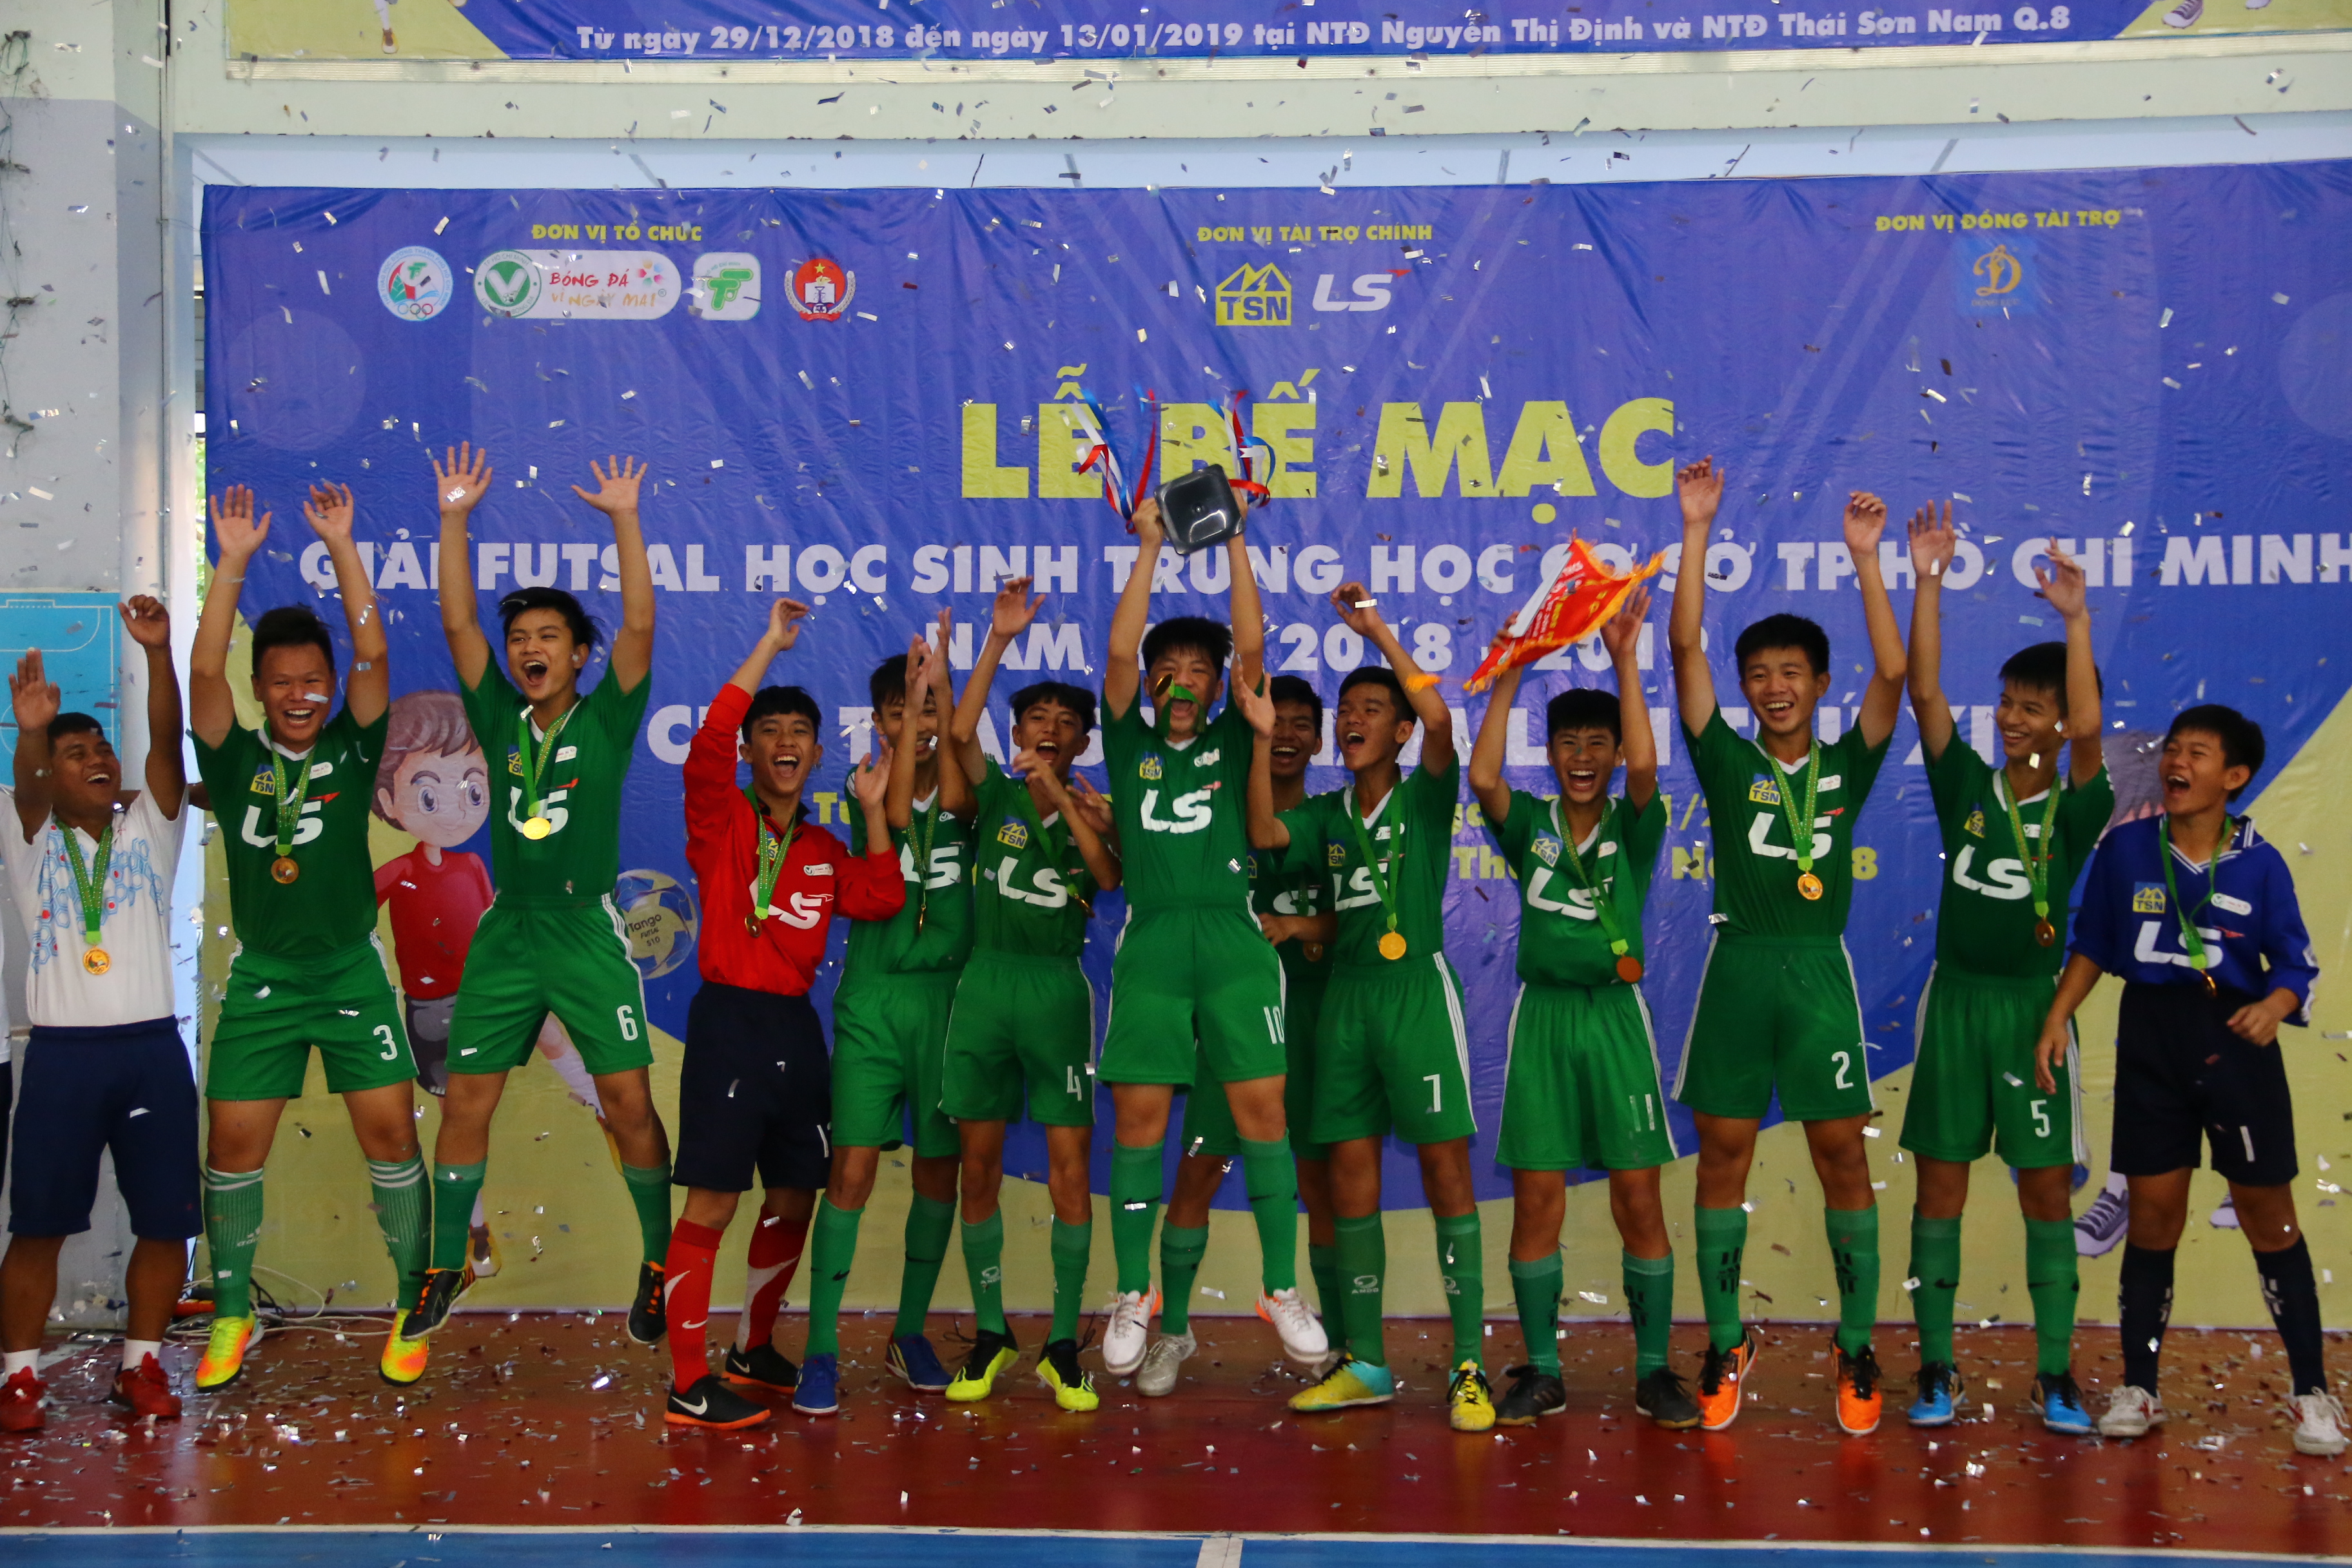 Năng khiếu Nguyễn Thị Định vô địch giải futsal học sinh THCS TPHCM - Bóng Đá